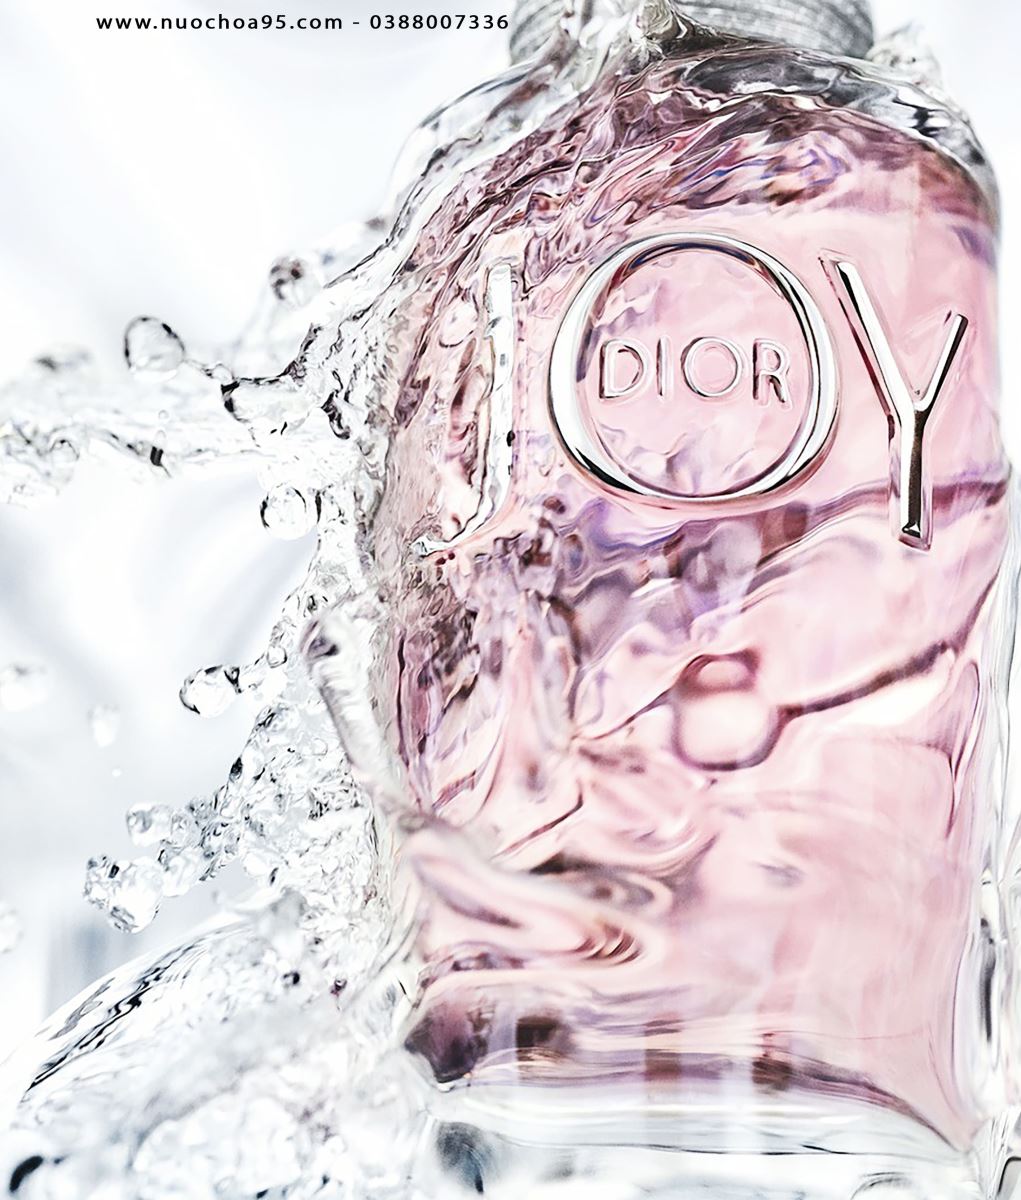 Nước hoa Joy by Dior - Ảnh 2